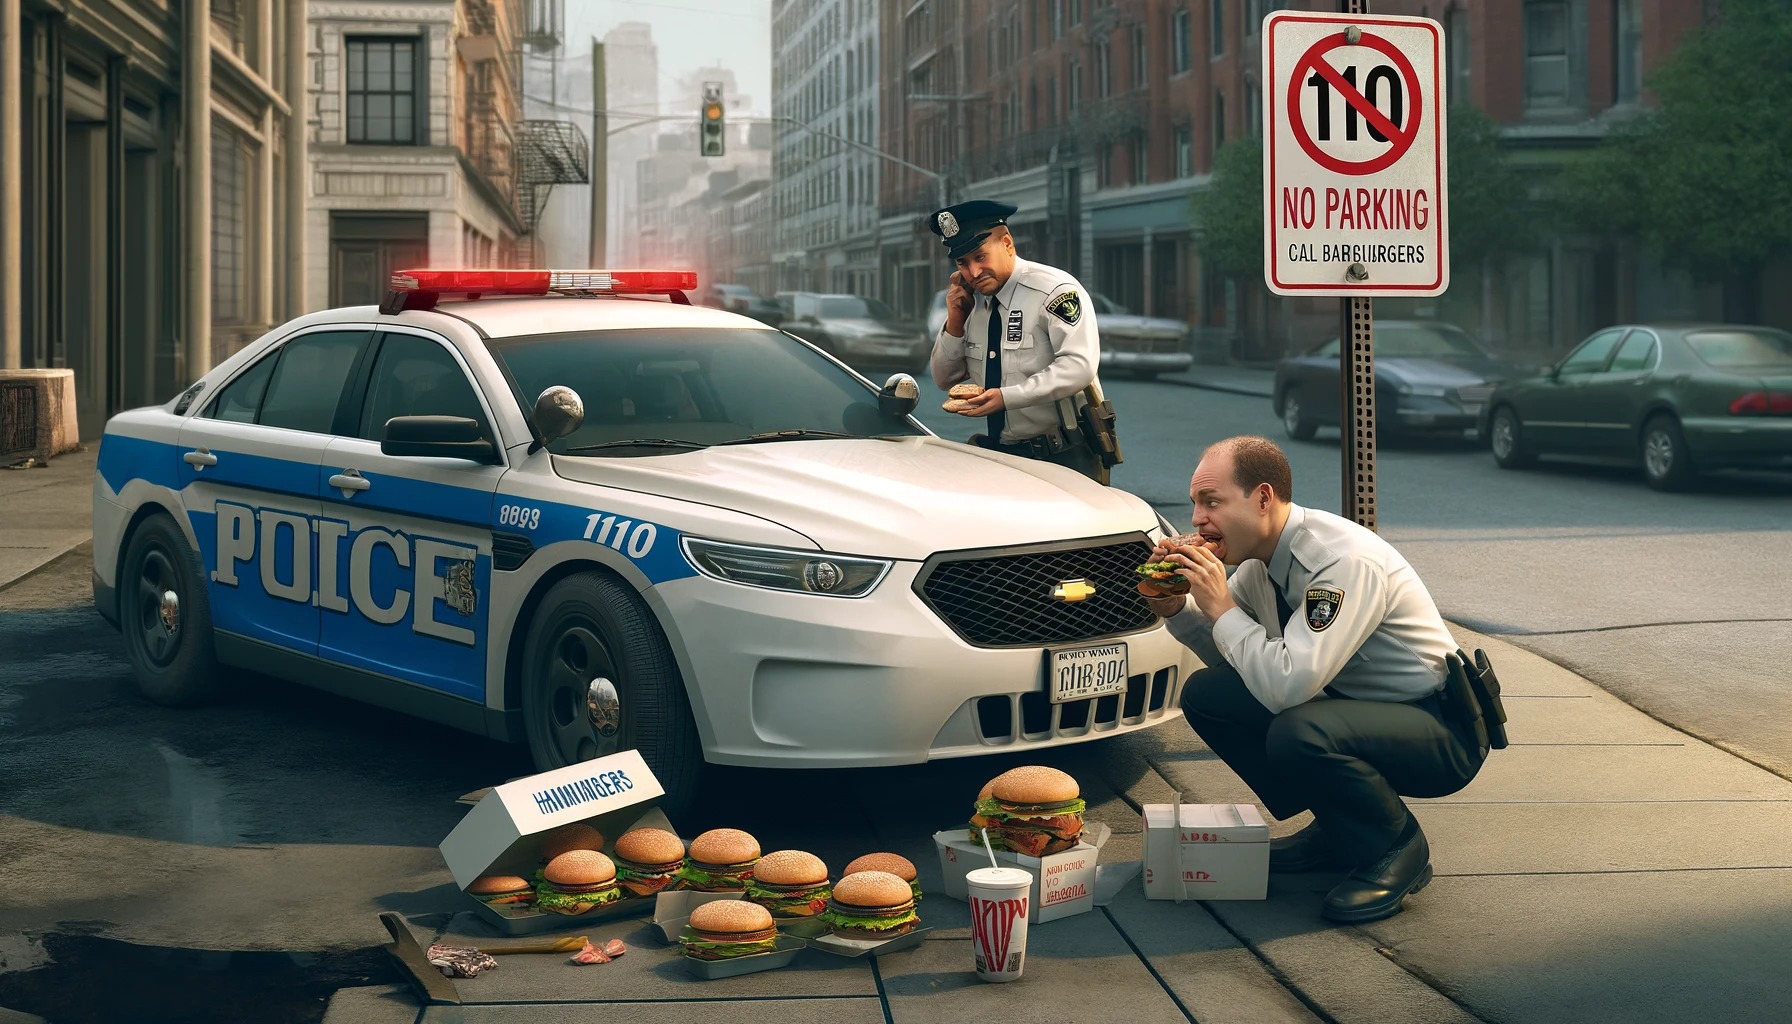 【地獄】覆面パトカー、車内でハンバーガー食ってたら通報されて無事死亡ｗｗｗｗｗｗｗｗｗ